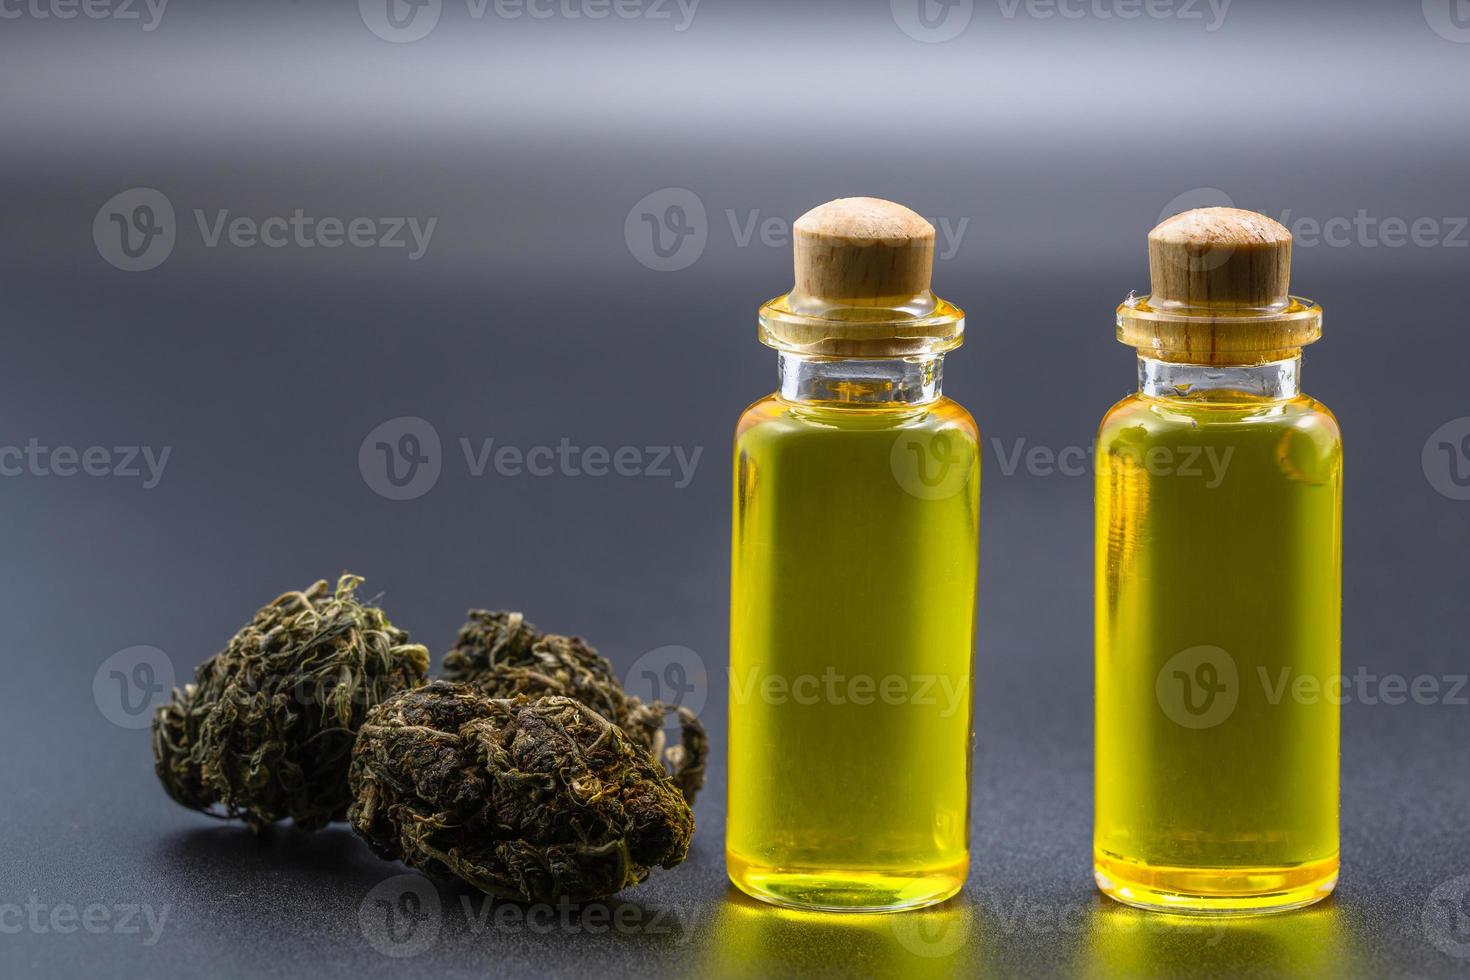 Cannabis-Cbd-Öl-Hanfprodukte, Cannabisölextrakte in Gläsern, medizinisches Marihuana und Öl für Patienten. alternative heilmittel oder medikamente, medizinkonzept foto